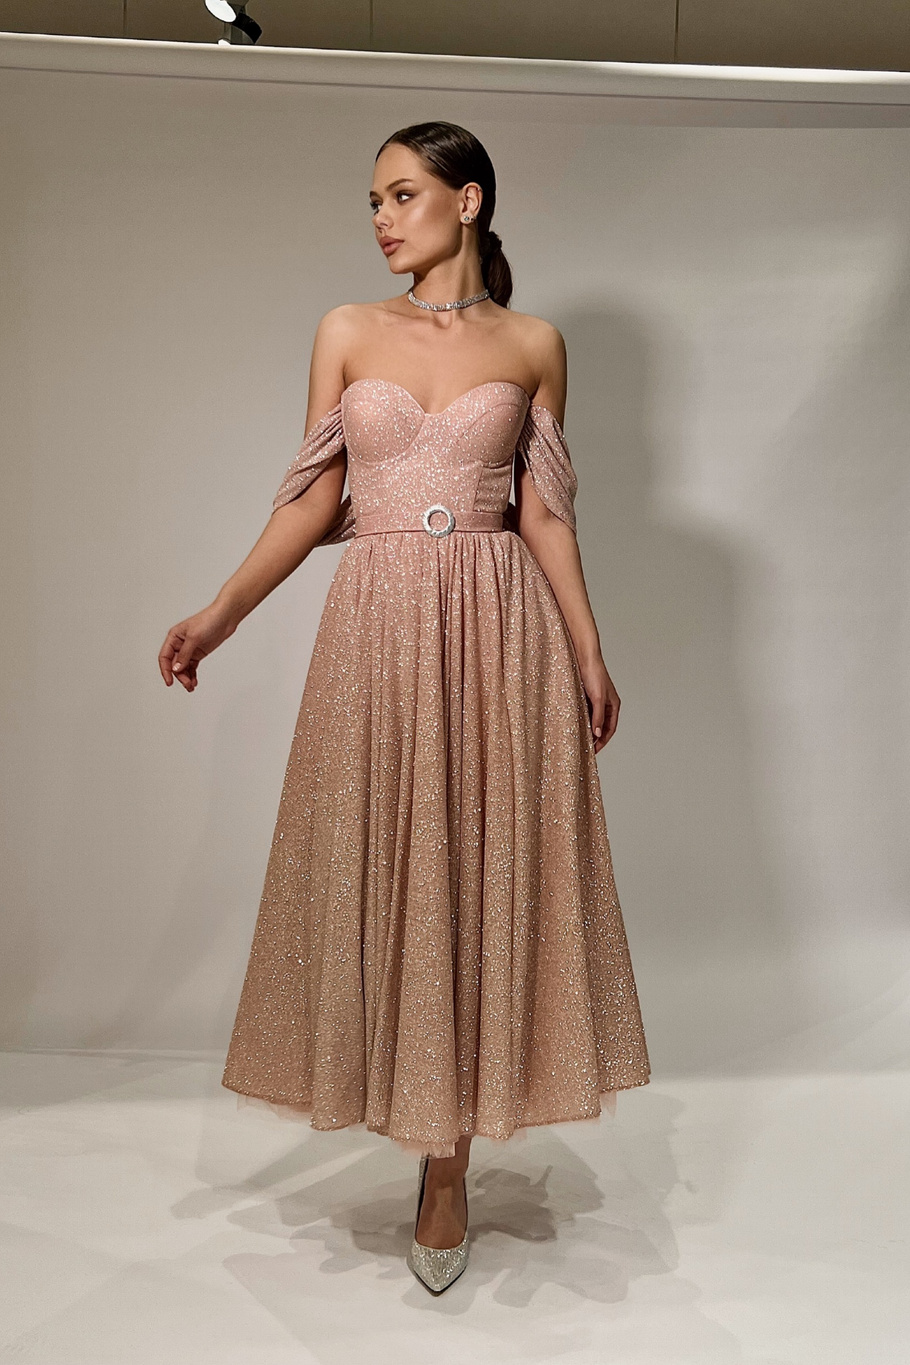 Купить вечернее платье «Арт.211nm» из вечерней коллекции в салоне «Мэри Трюфель»